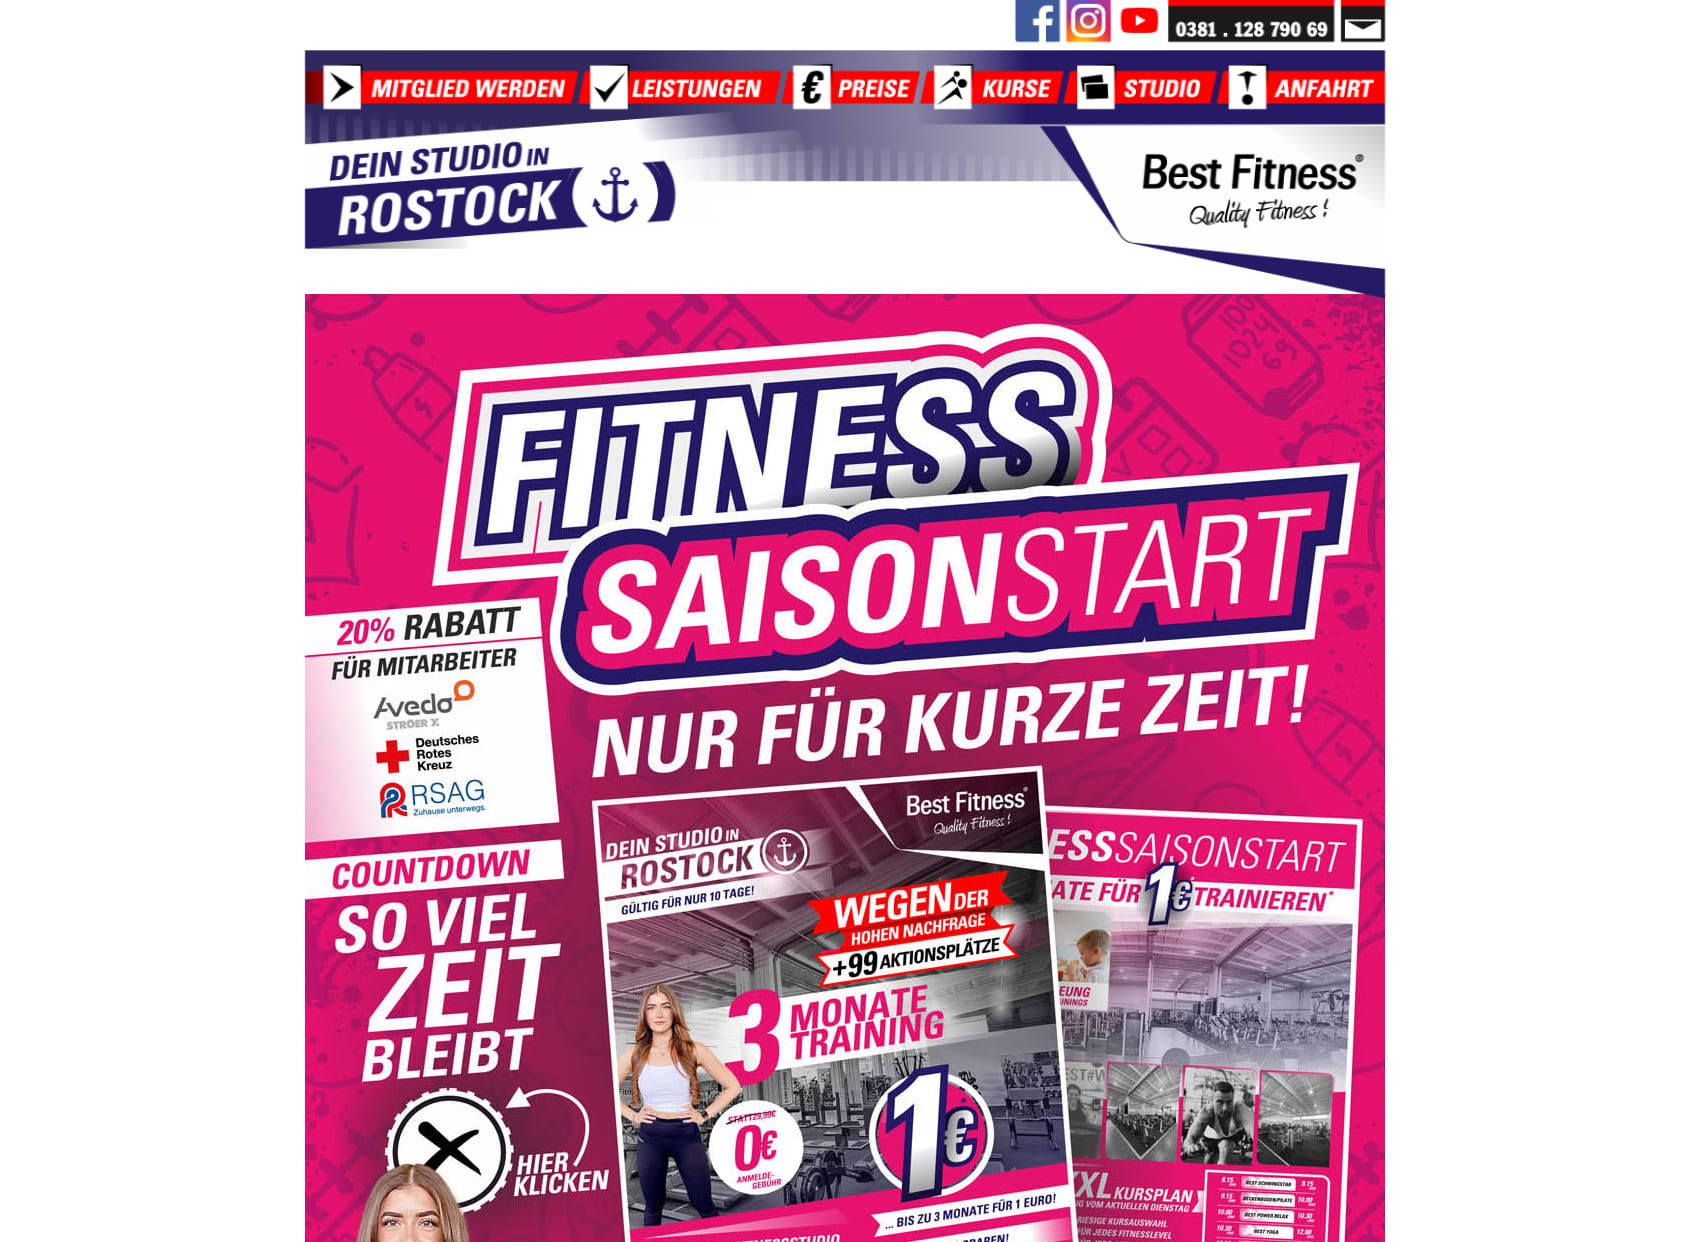 Best Fitness - Dein Fitnessstudio in Rostock